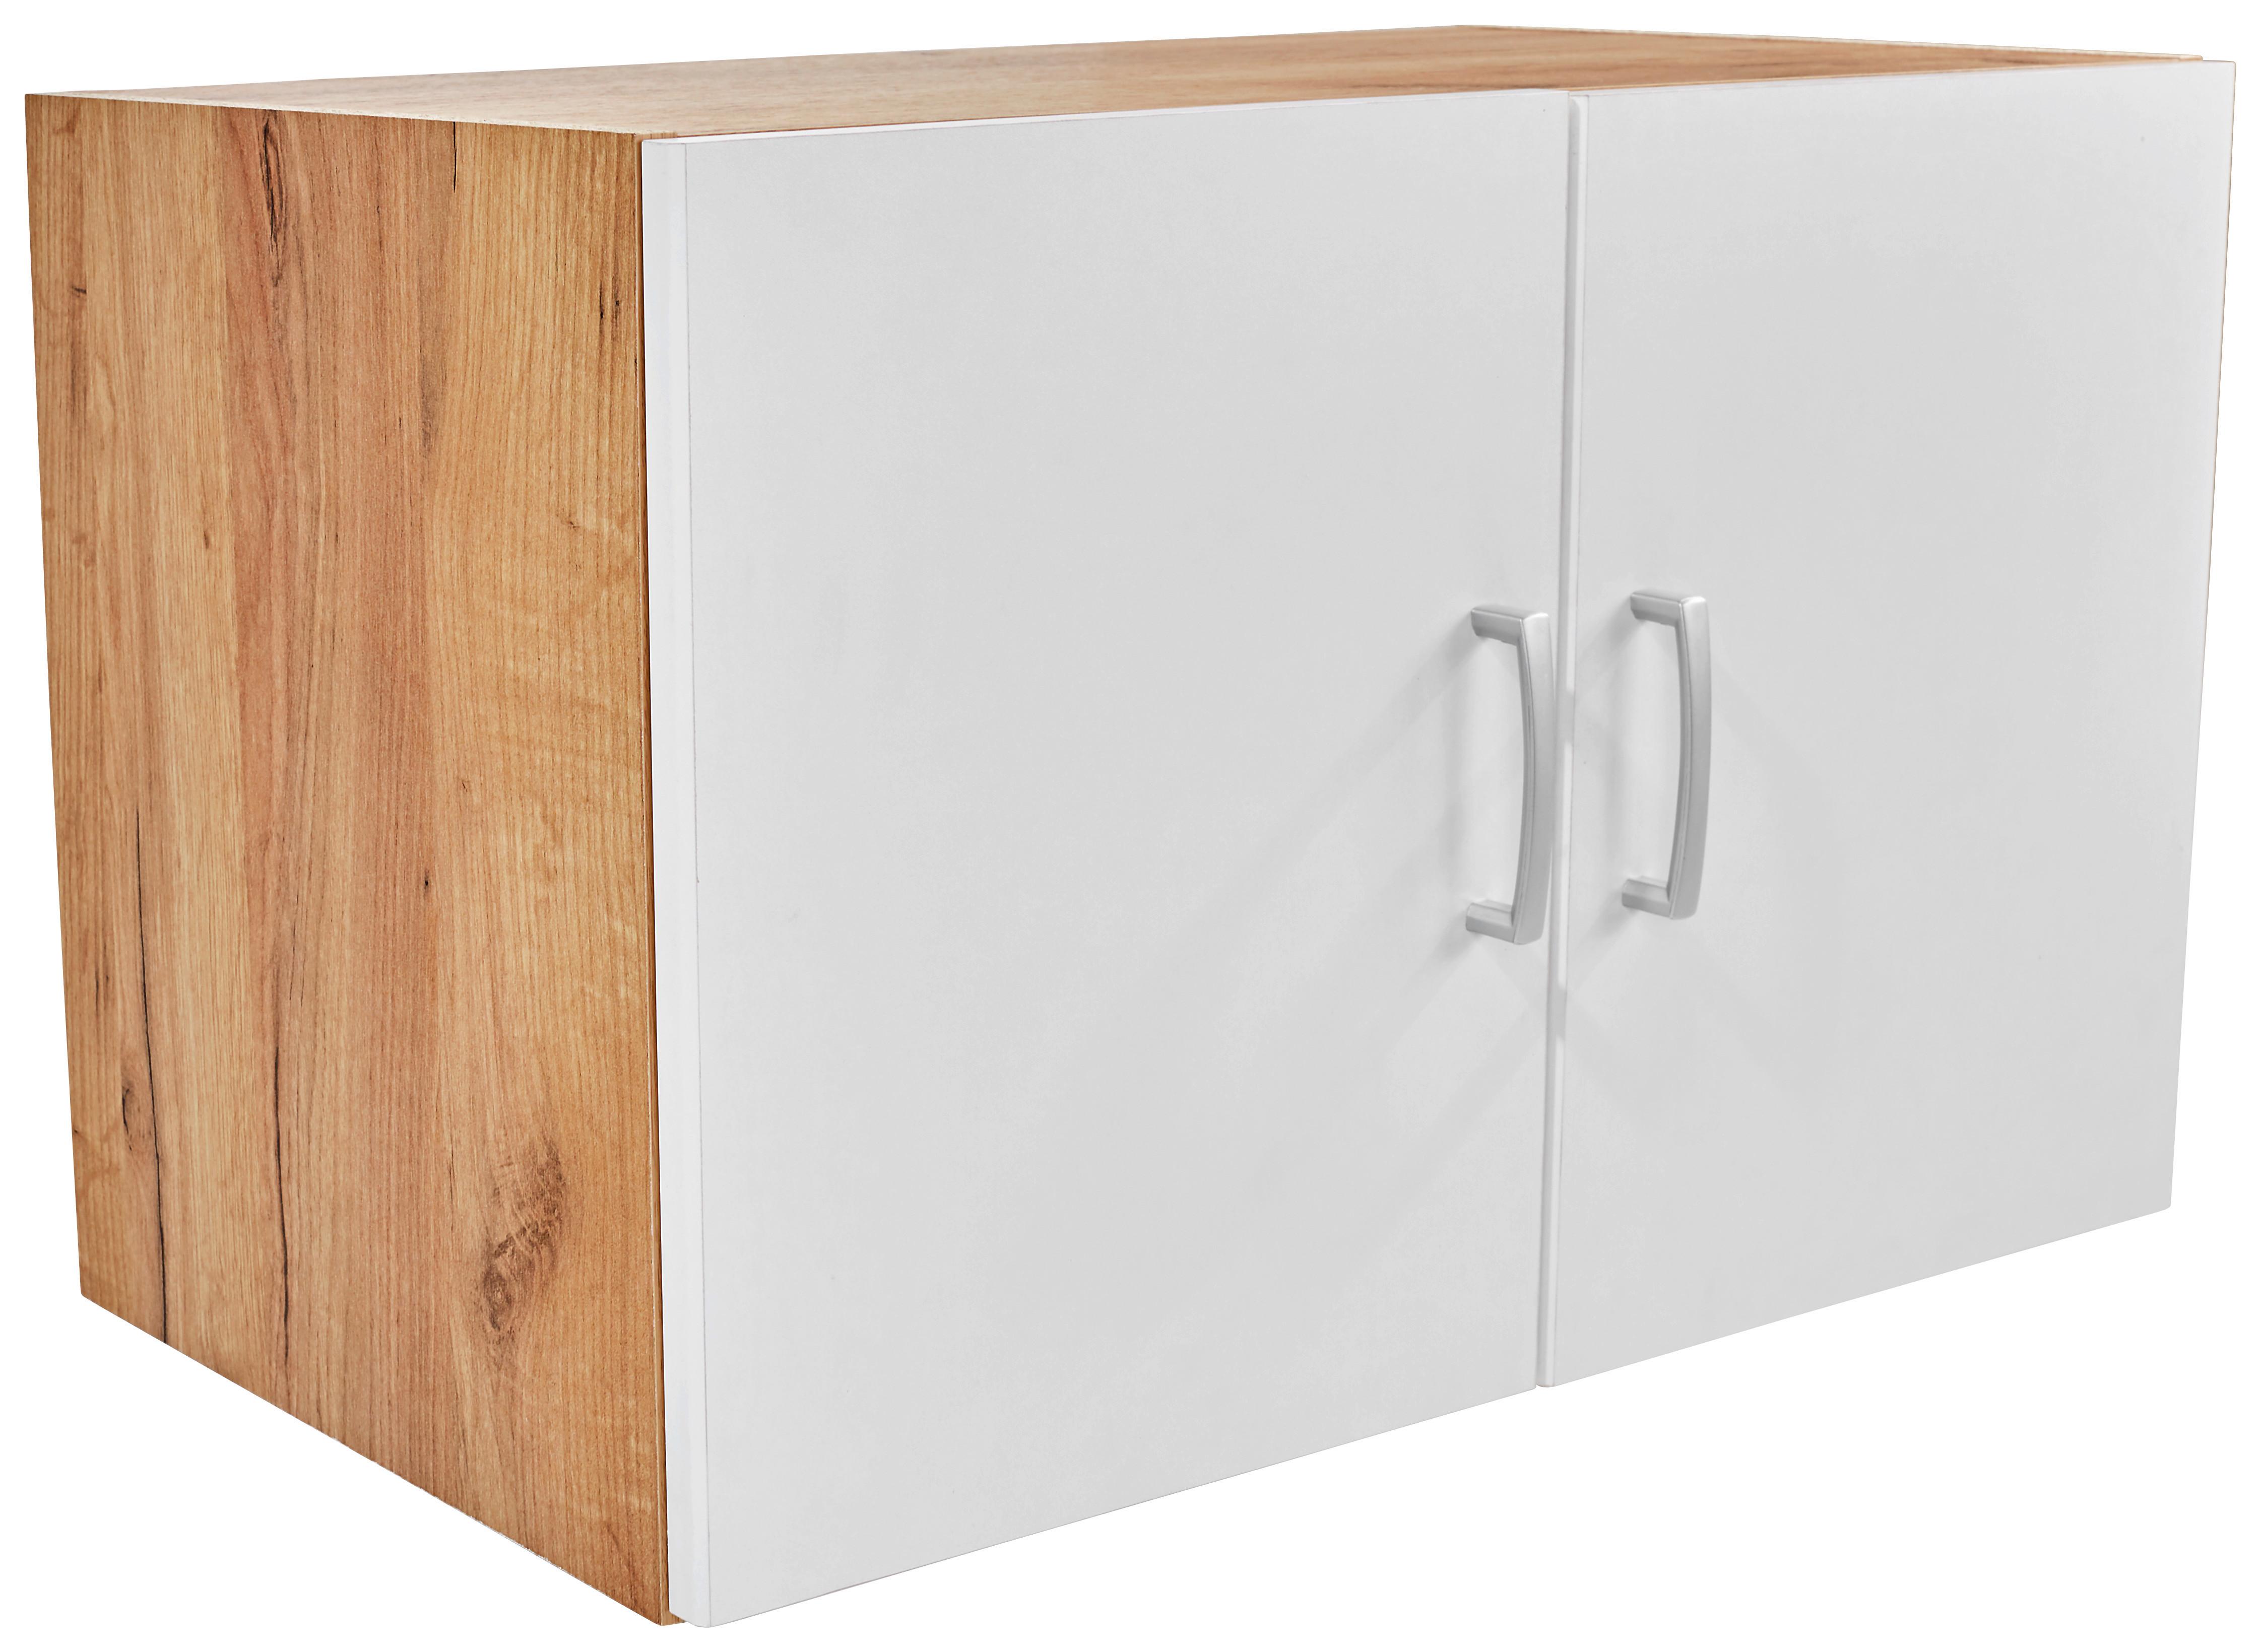 Dulap auxiliar superior Tio - alb/culoare lemn stejar, Konventionell, material pe bază de lemn (80/43/37,5cm)